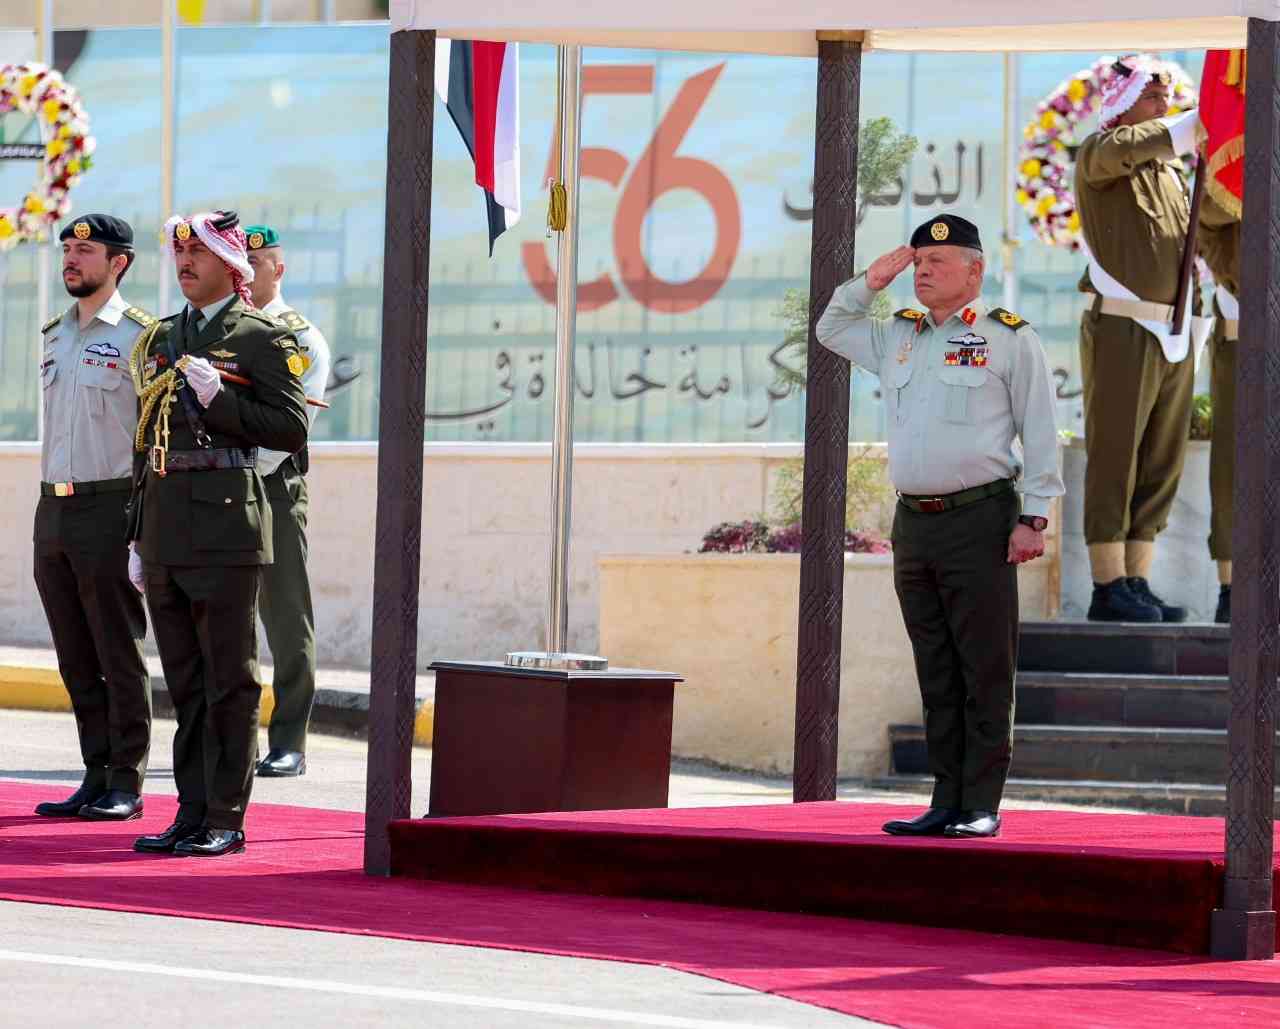 الملك يرعى احتفال القوات المسلحة بالذكرى الـ56 لمعركة الكرامة (فيديو)